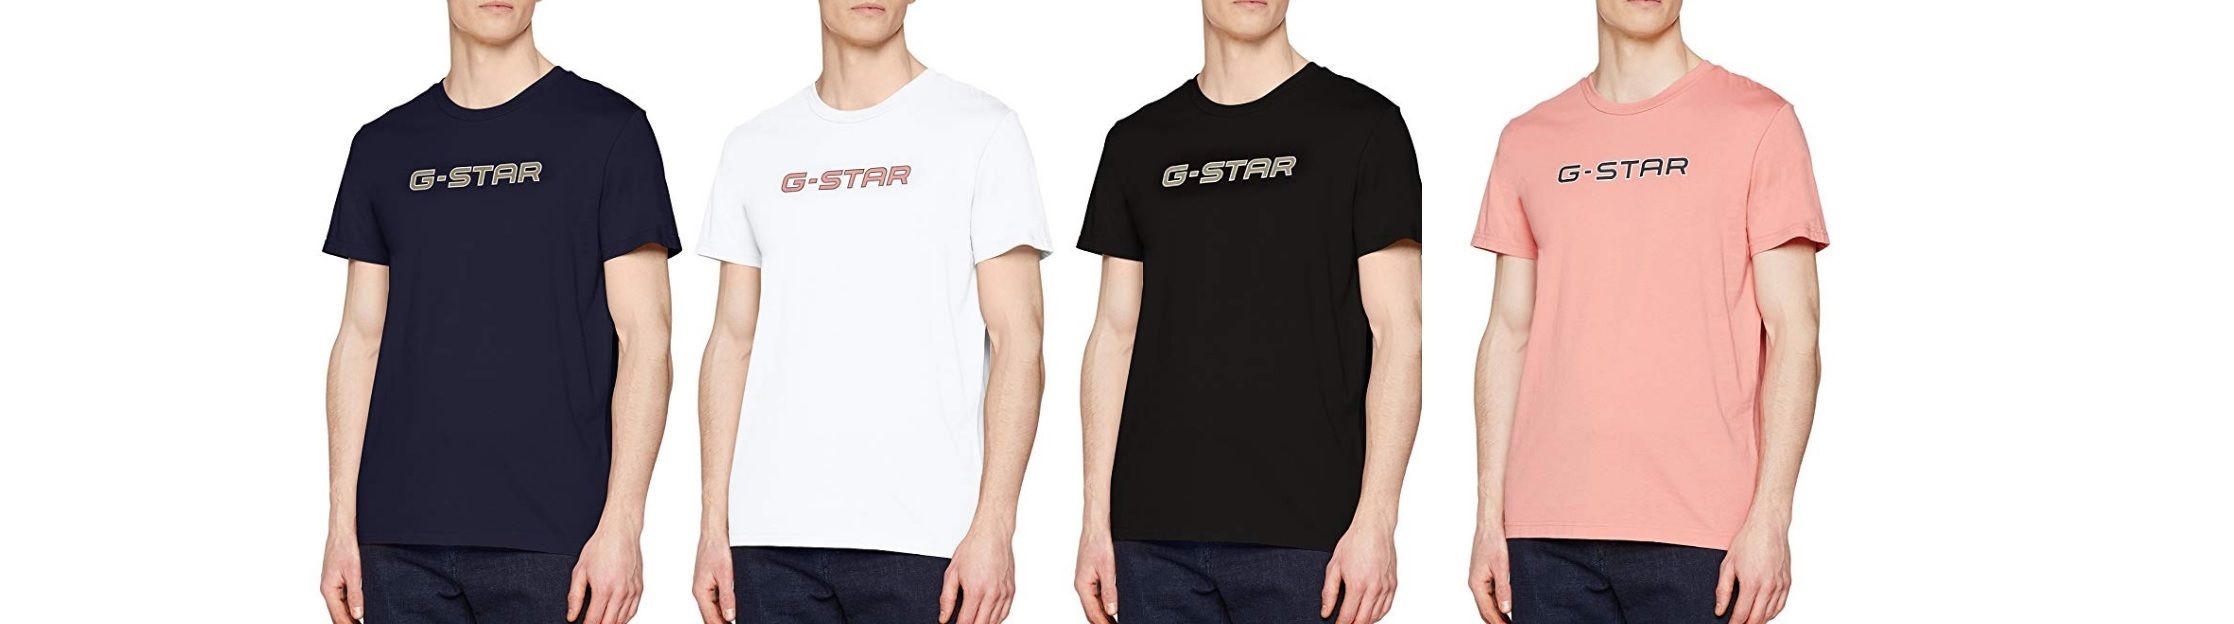 ¡Chollo! Camiseta G-STAR RAW Geston R desde sólo 15,17€ (antes 35€)